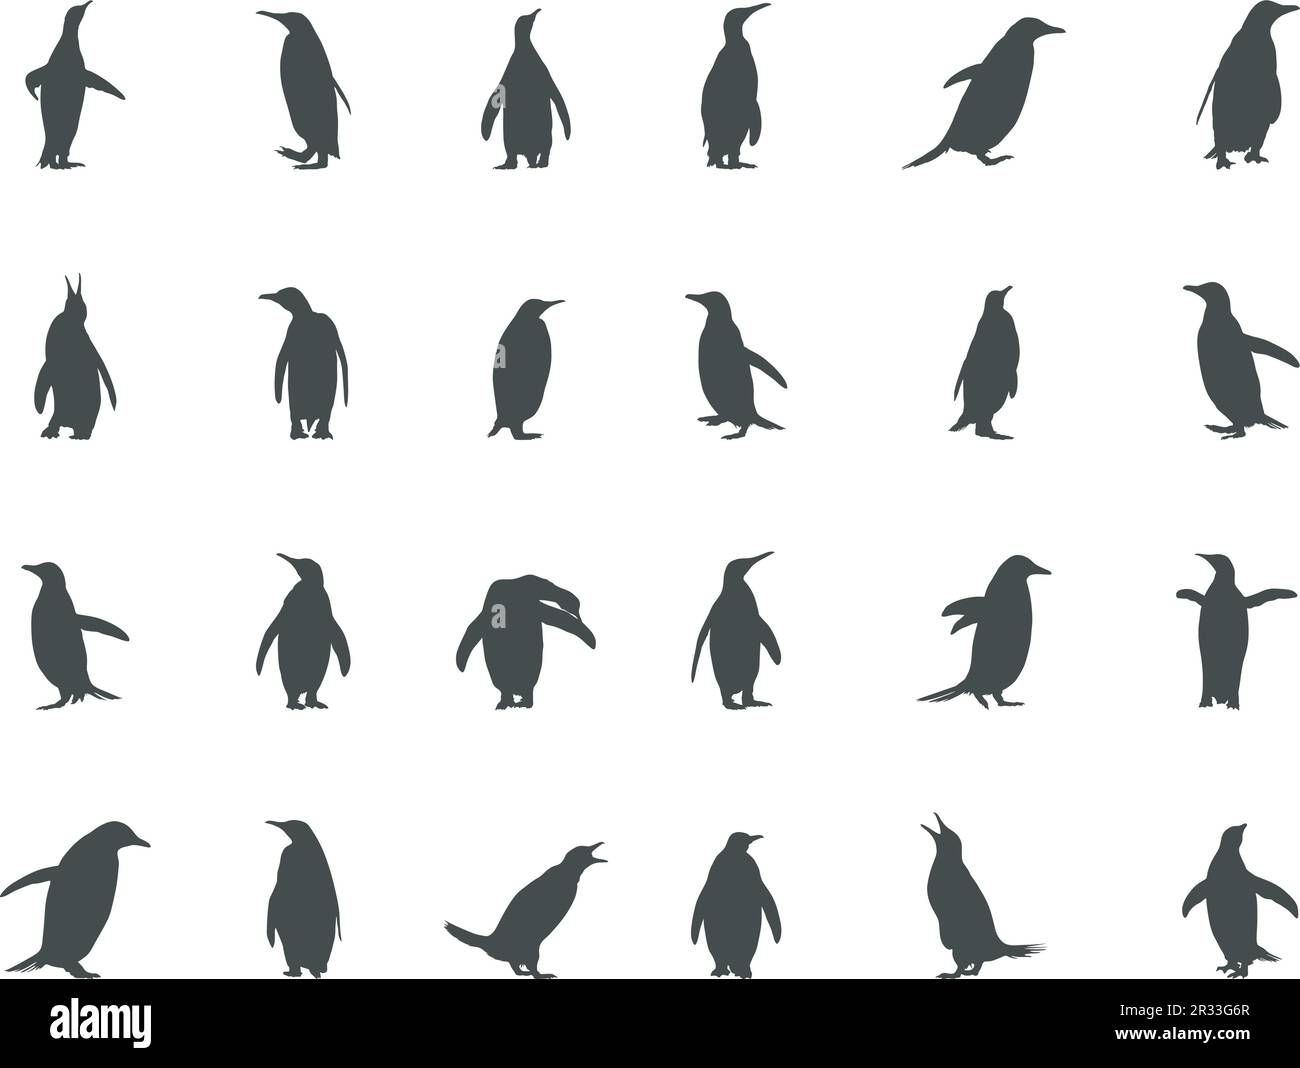 Profilo dei pinguini, Clipart dei pinguini, illustrazione dei pinguini. Illustrazione Vettoriale